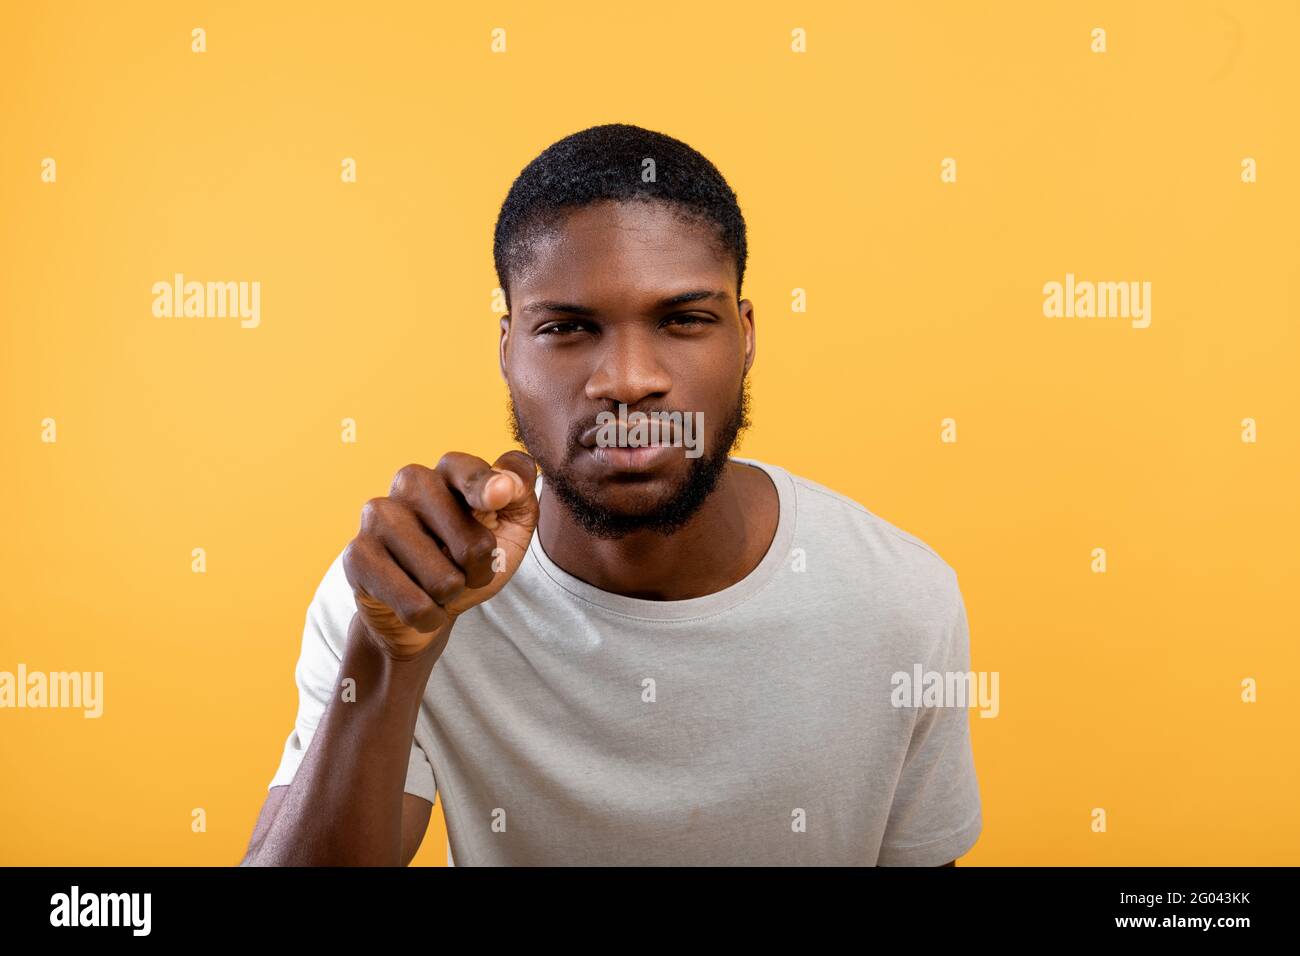 Concetto di sospetto. Uomo afro-americano che guarda e punta il dito verso la telecamera, standig su sfondo giallo Foto Stock